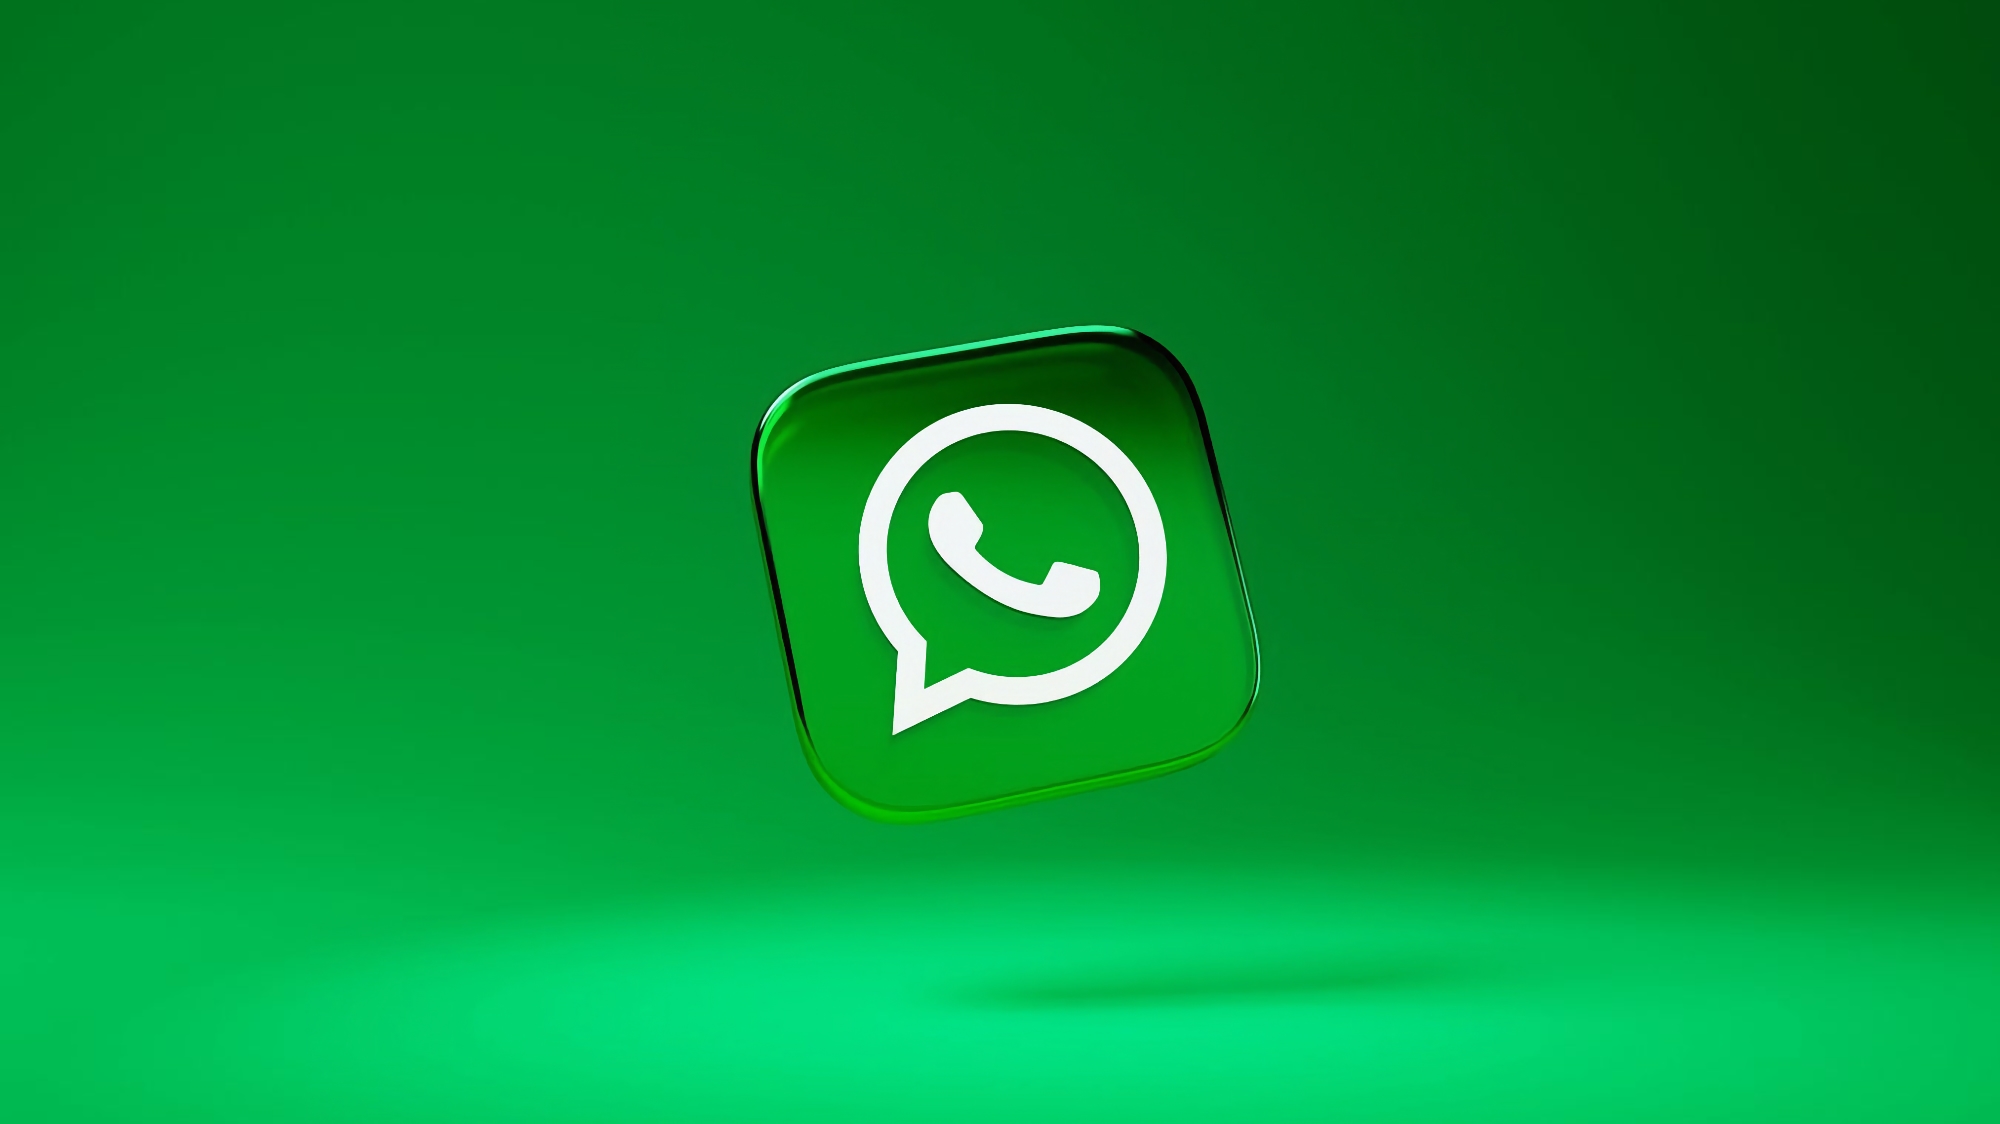 WhatsApp kommer att erbjuda möjligheten att skicka foton i hög kvalitet